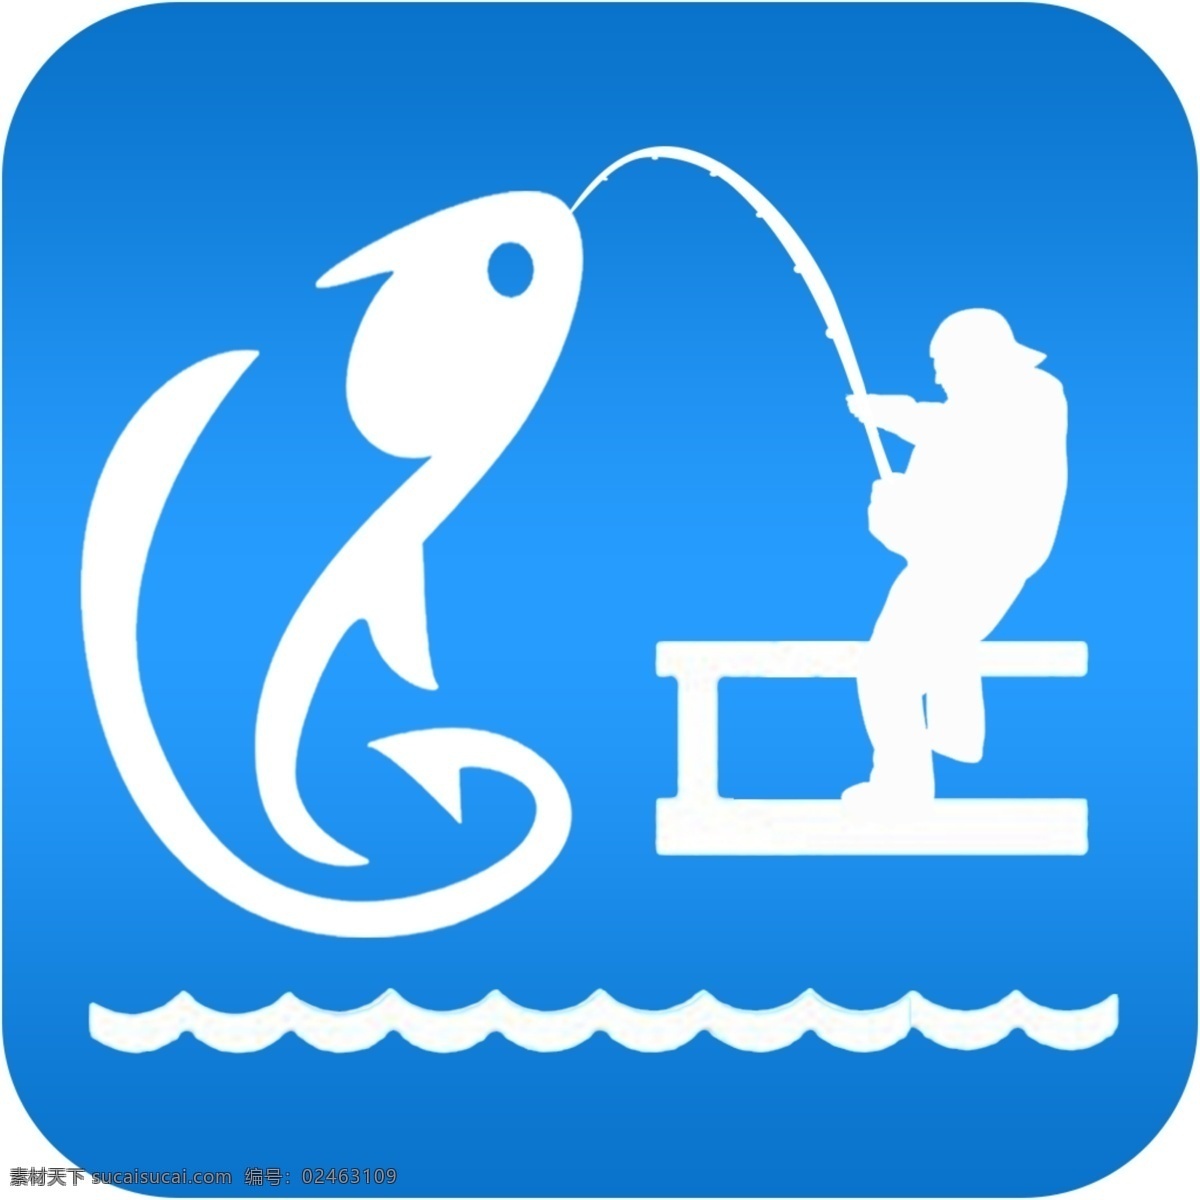 app 钓鱼 图标 垂钓 鱼竿 海钓 钓鱼运动 钓具 钓鱼设计 钓鱼图标 钓鱼标志 钓鱼logo 垂钓图标 原创设计 其他原创设计